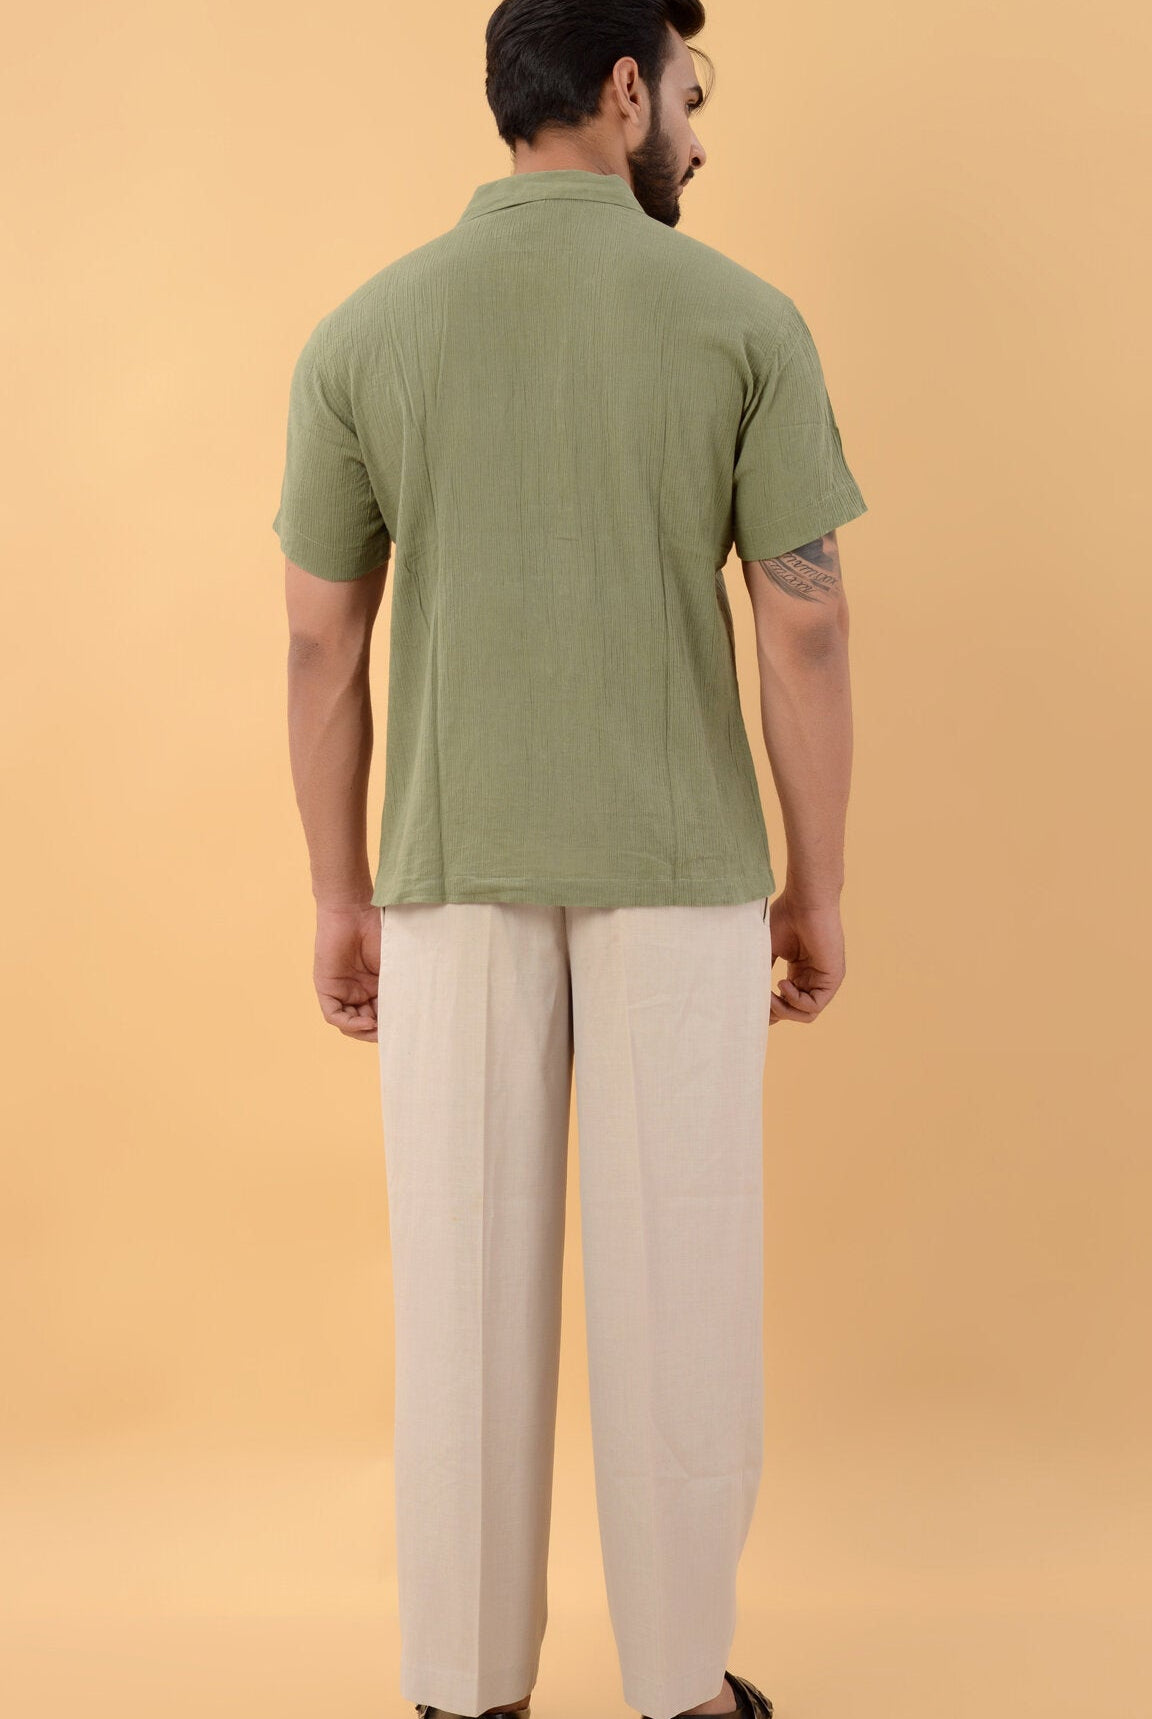 Green Shirt - CiceroniShirtHouse Of K.C